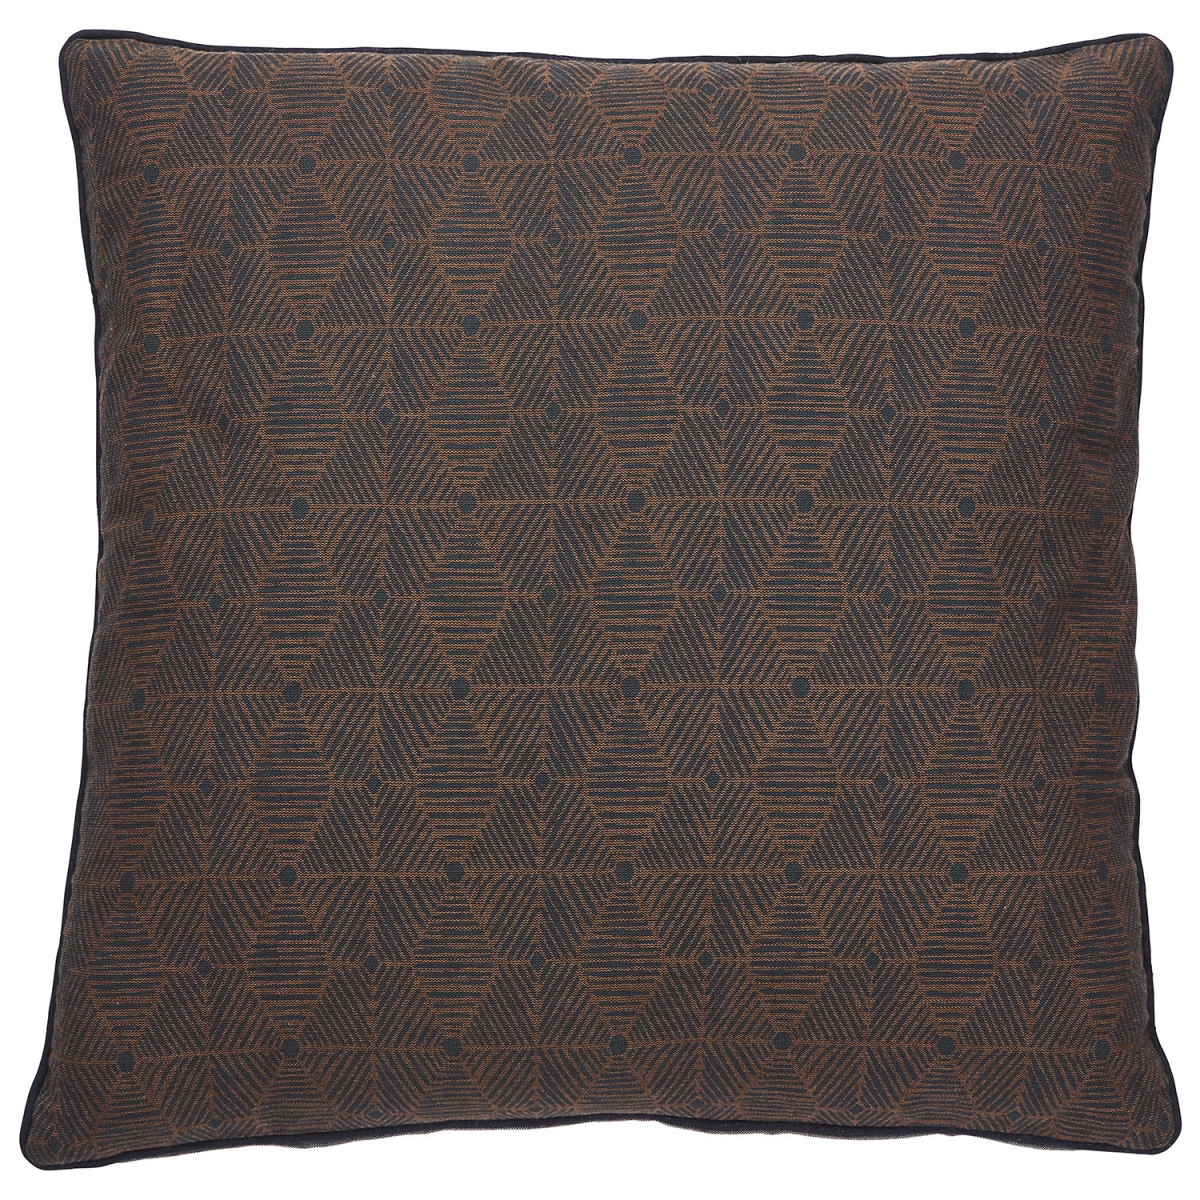 Plw102846 18 X 18 In. Montparnasse Tabitha Brown & Indigo Geometric Poly Throw Pillow